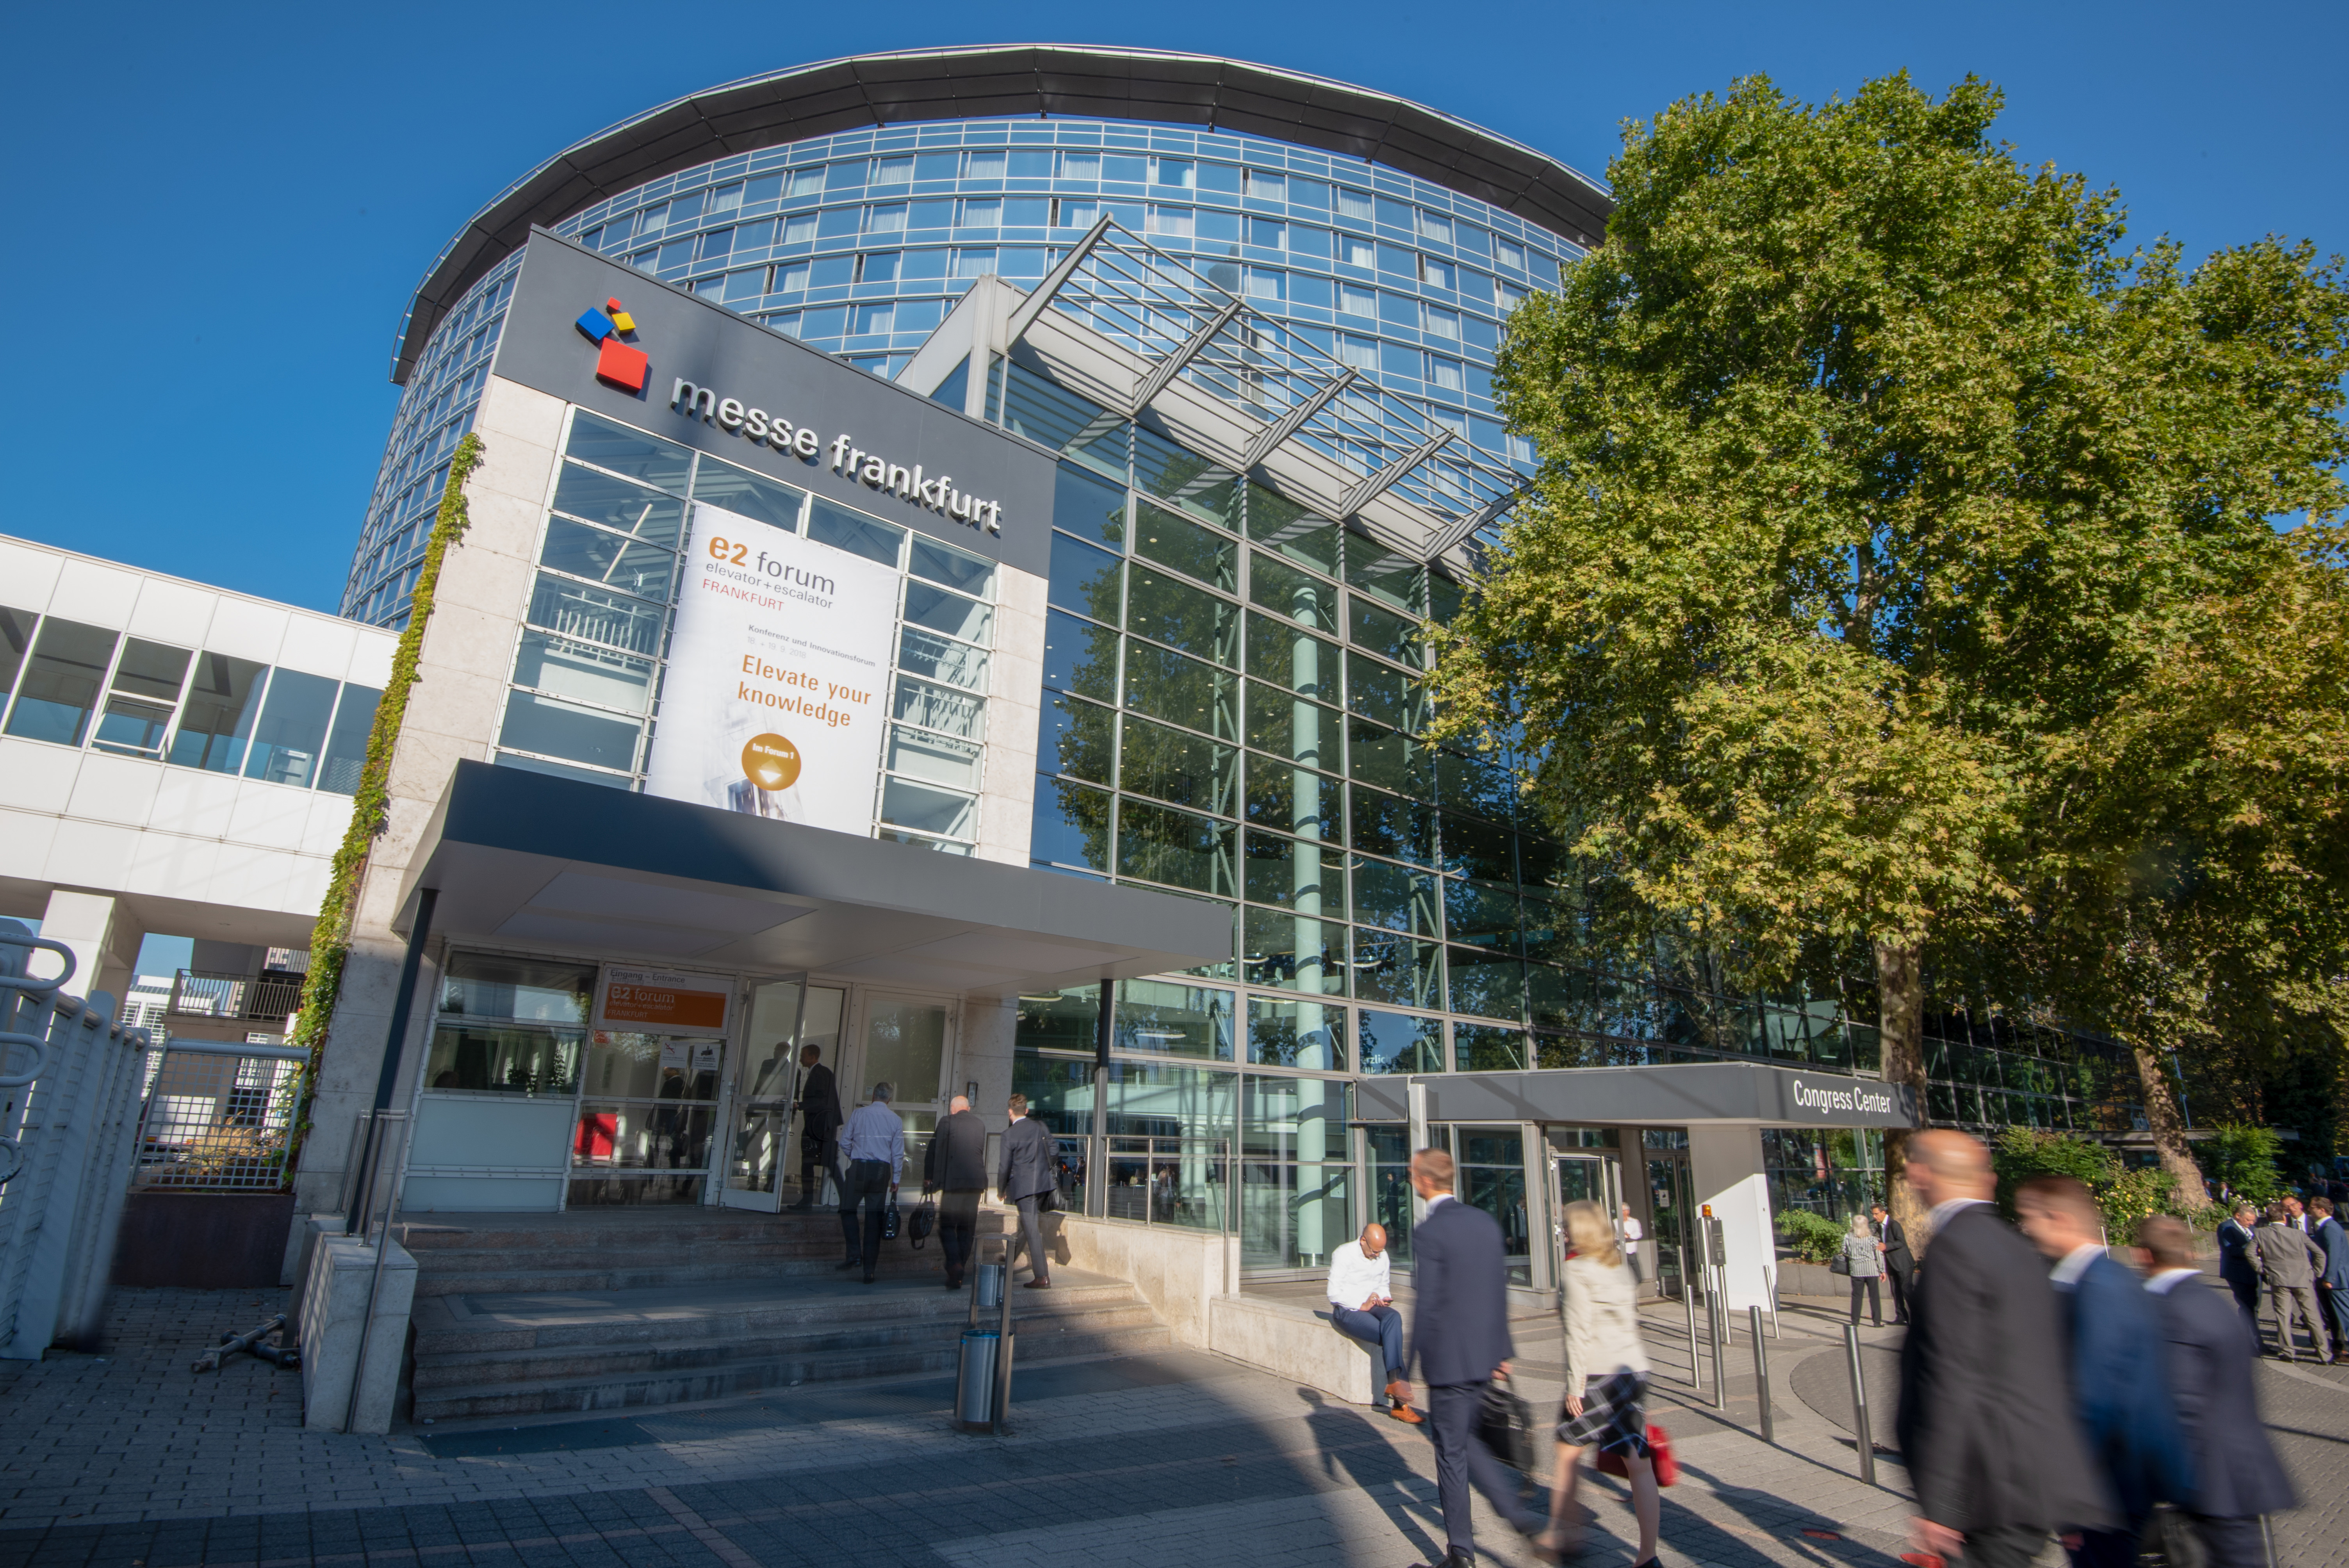 Reger Besucherzustrom auf dem E2 Forum Frankfurt – erstmals seit der pandemiebedingten Unterbrechung wieder „live“ am 21. und 22. September 2022.